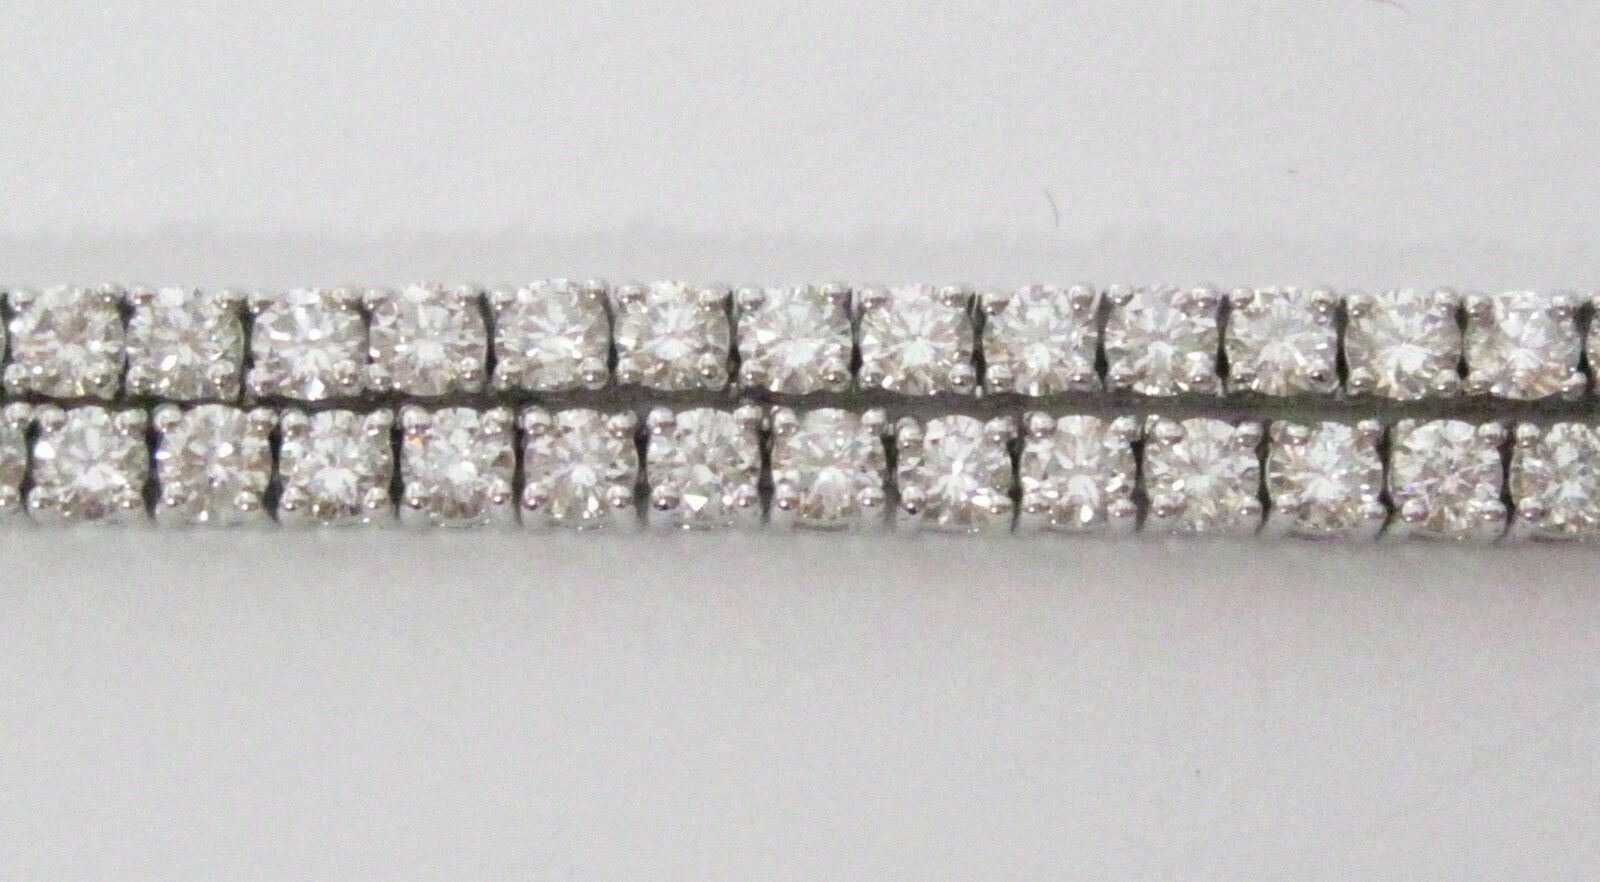 10.56 TCW Round Brilliant Cut Diamond Riviera Necklace G VS1-2 18k White Gold